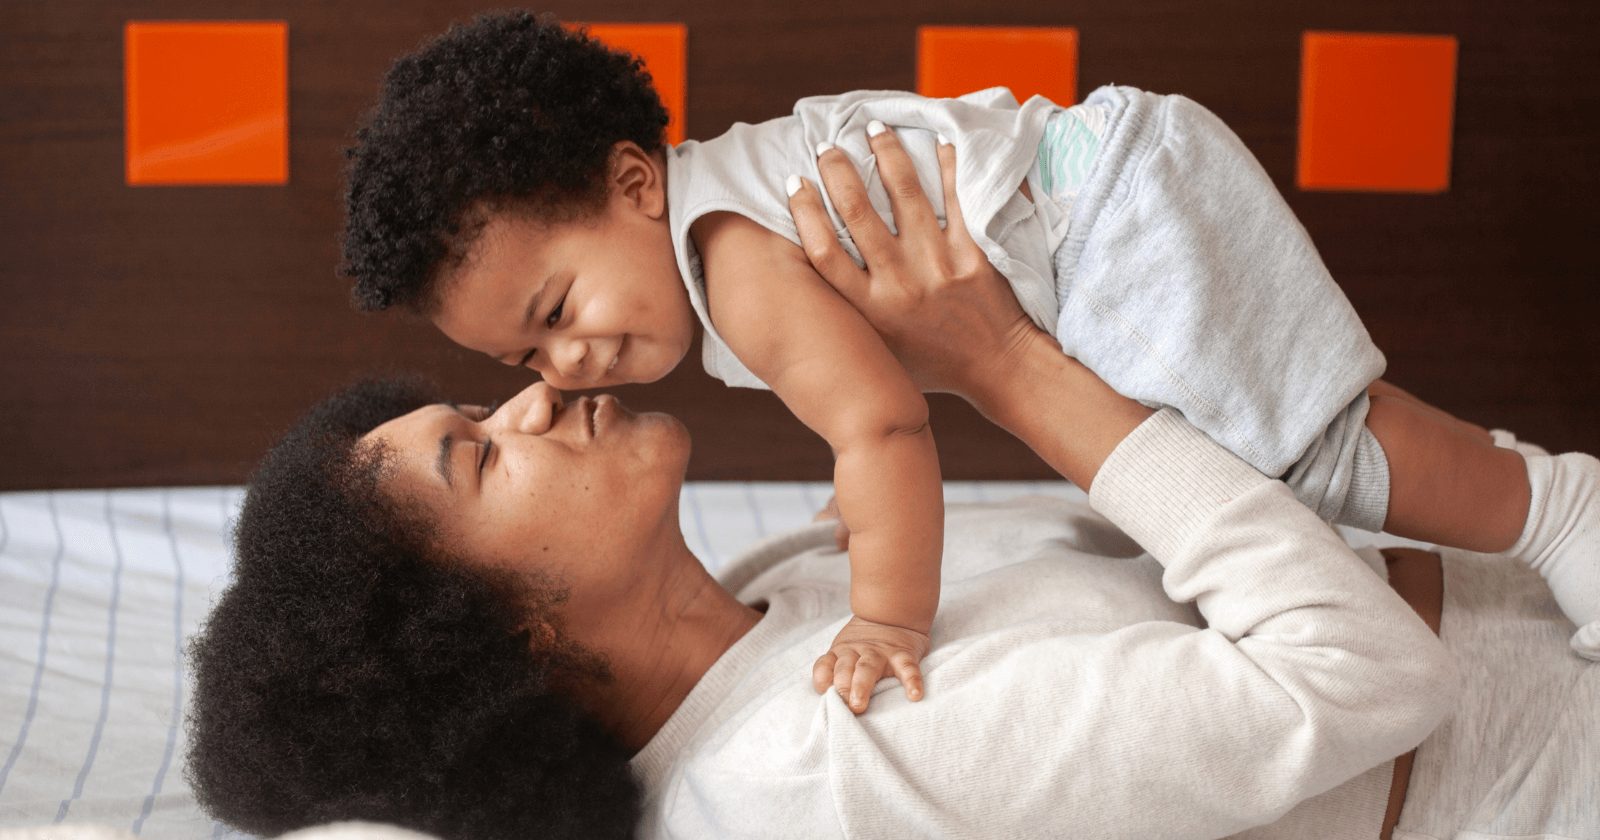 Frases de boa noite para o dia das mães: +25 mensagens lindas para compartilhar